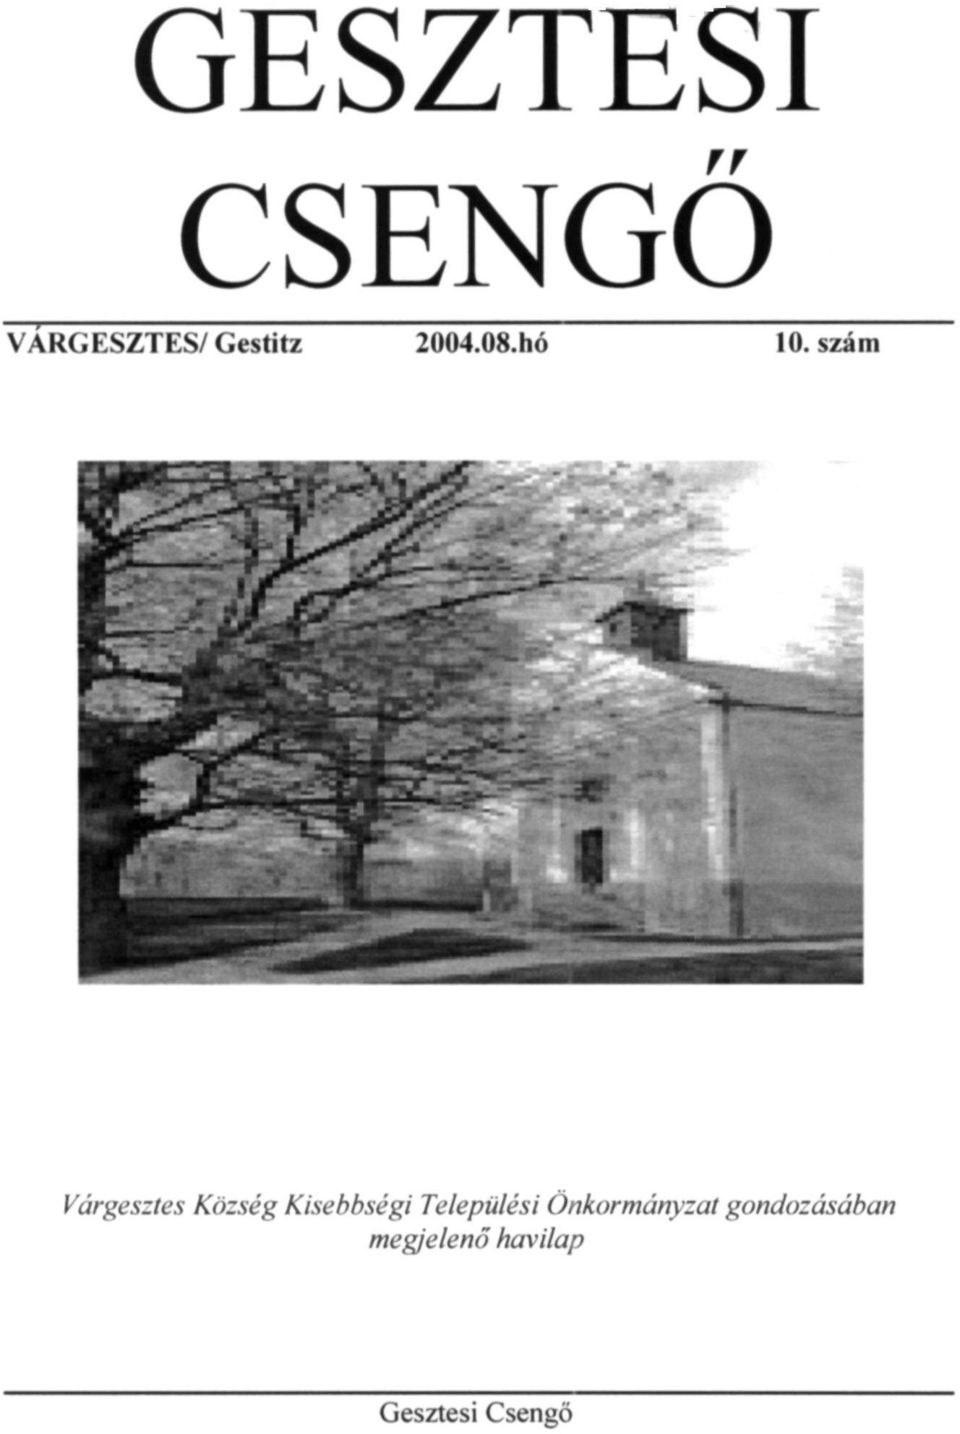 GESZTESI CSENGŐ VARGESZTES/Gestitz hó 10. szám - PDF Free Download